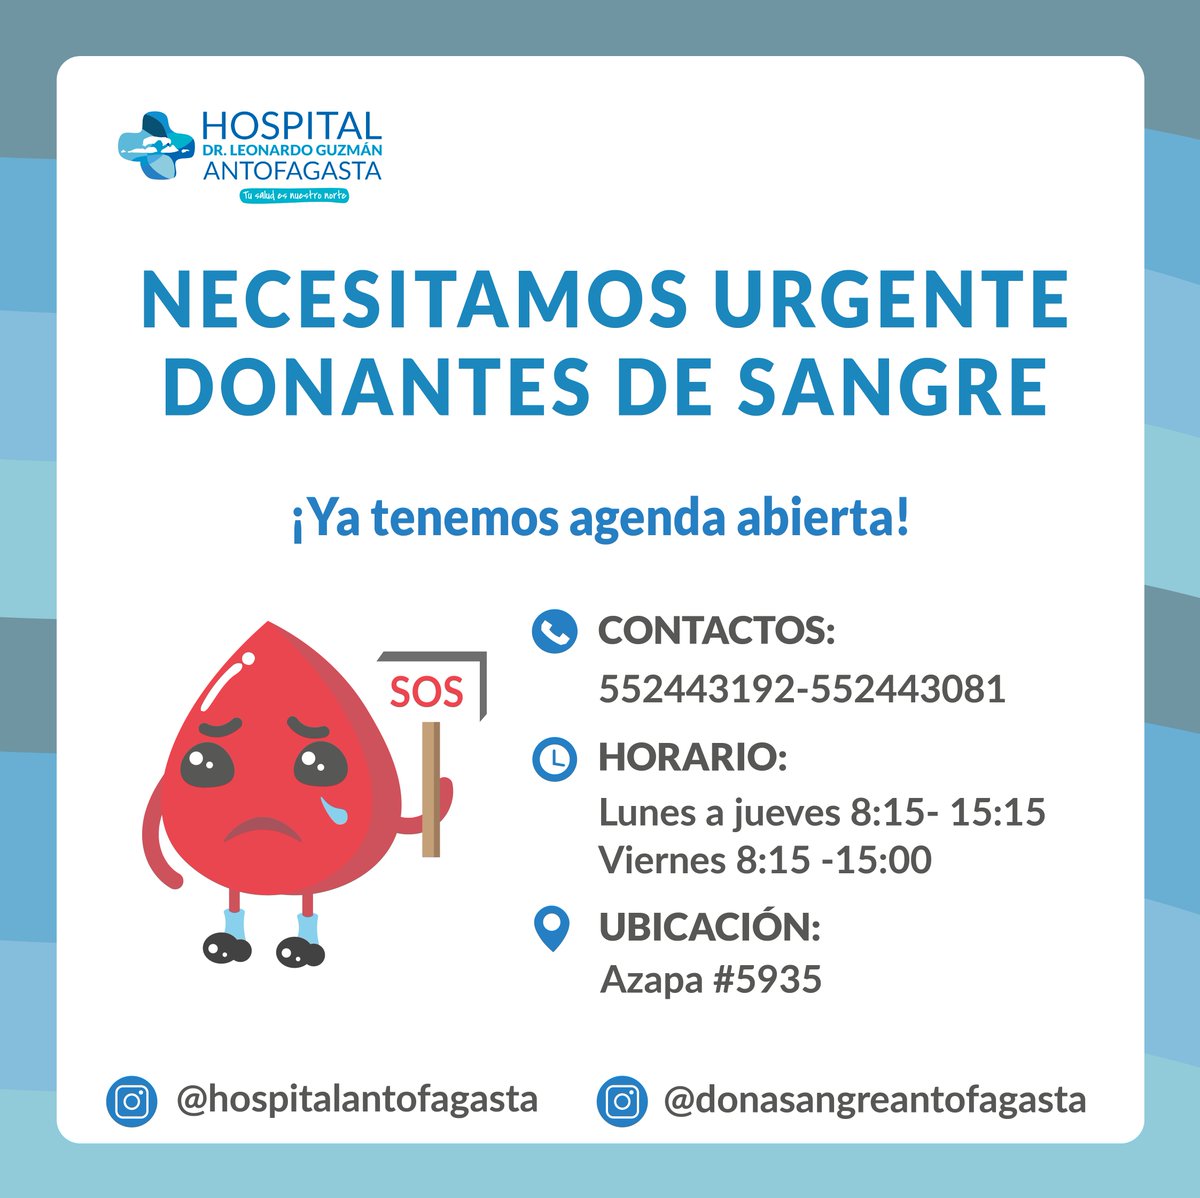 #Antofagasta | ¿Pensando en alguna buena acción para estos días? 
¡Ven a donar sangre! 
Donar es un acto voluntario y simple que no produce molestias.
¿Conoces los requisitos? 
+Inf: 552443192 - 552442083
#DonarSangreSalvaVidas